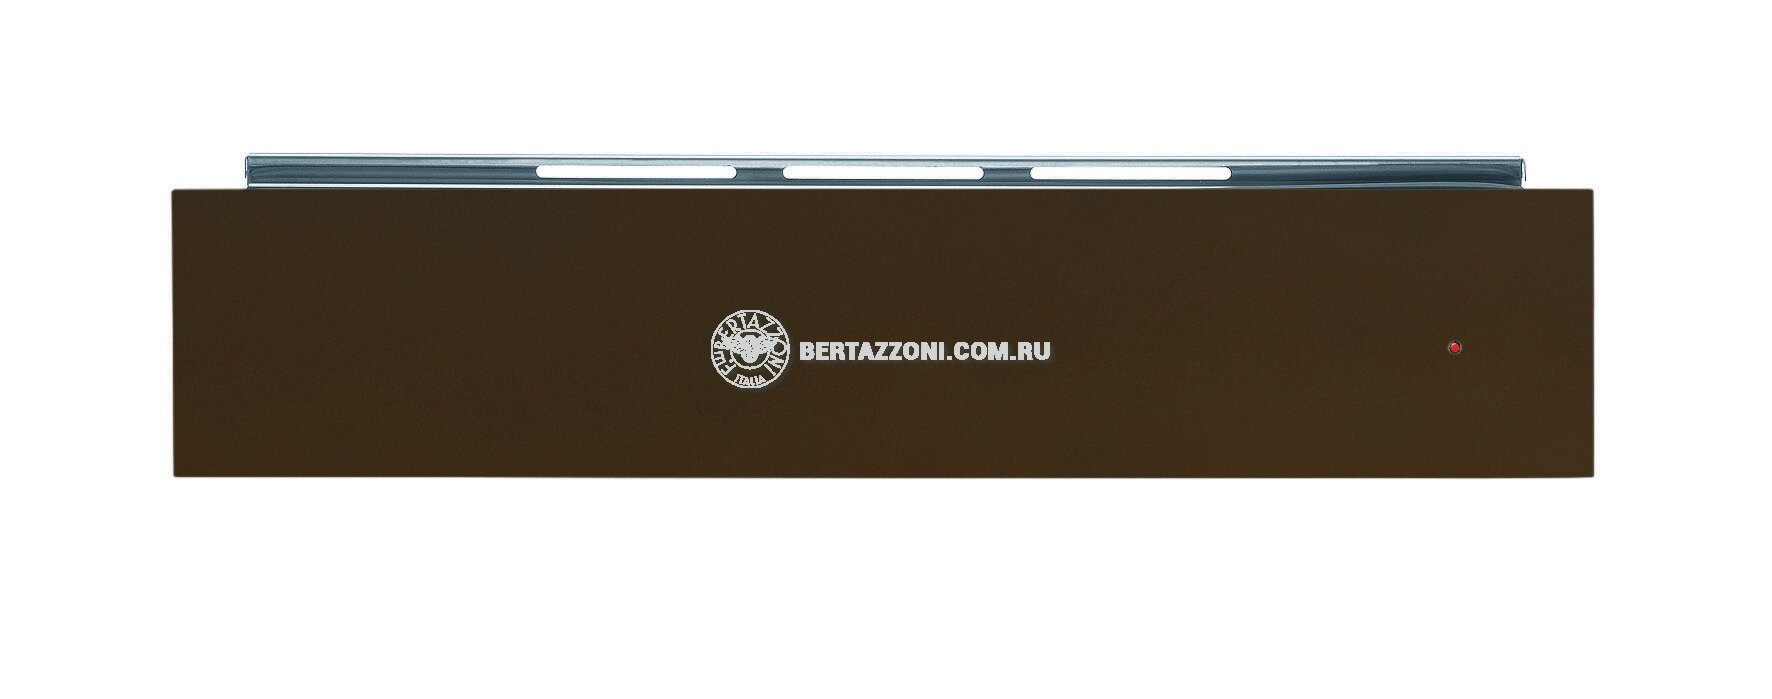 Bertazzoni Ящик для подогрева, Bertazzoni, модель WD60C